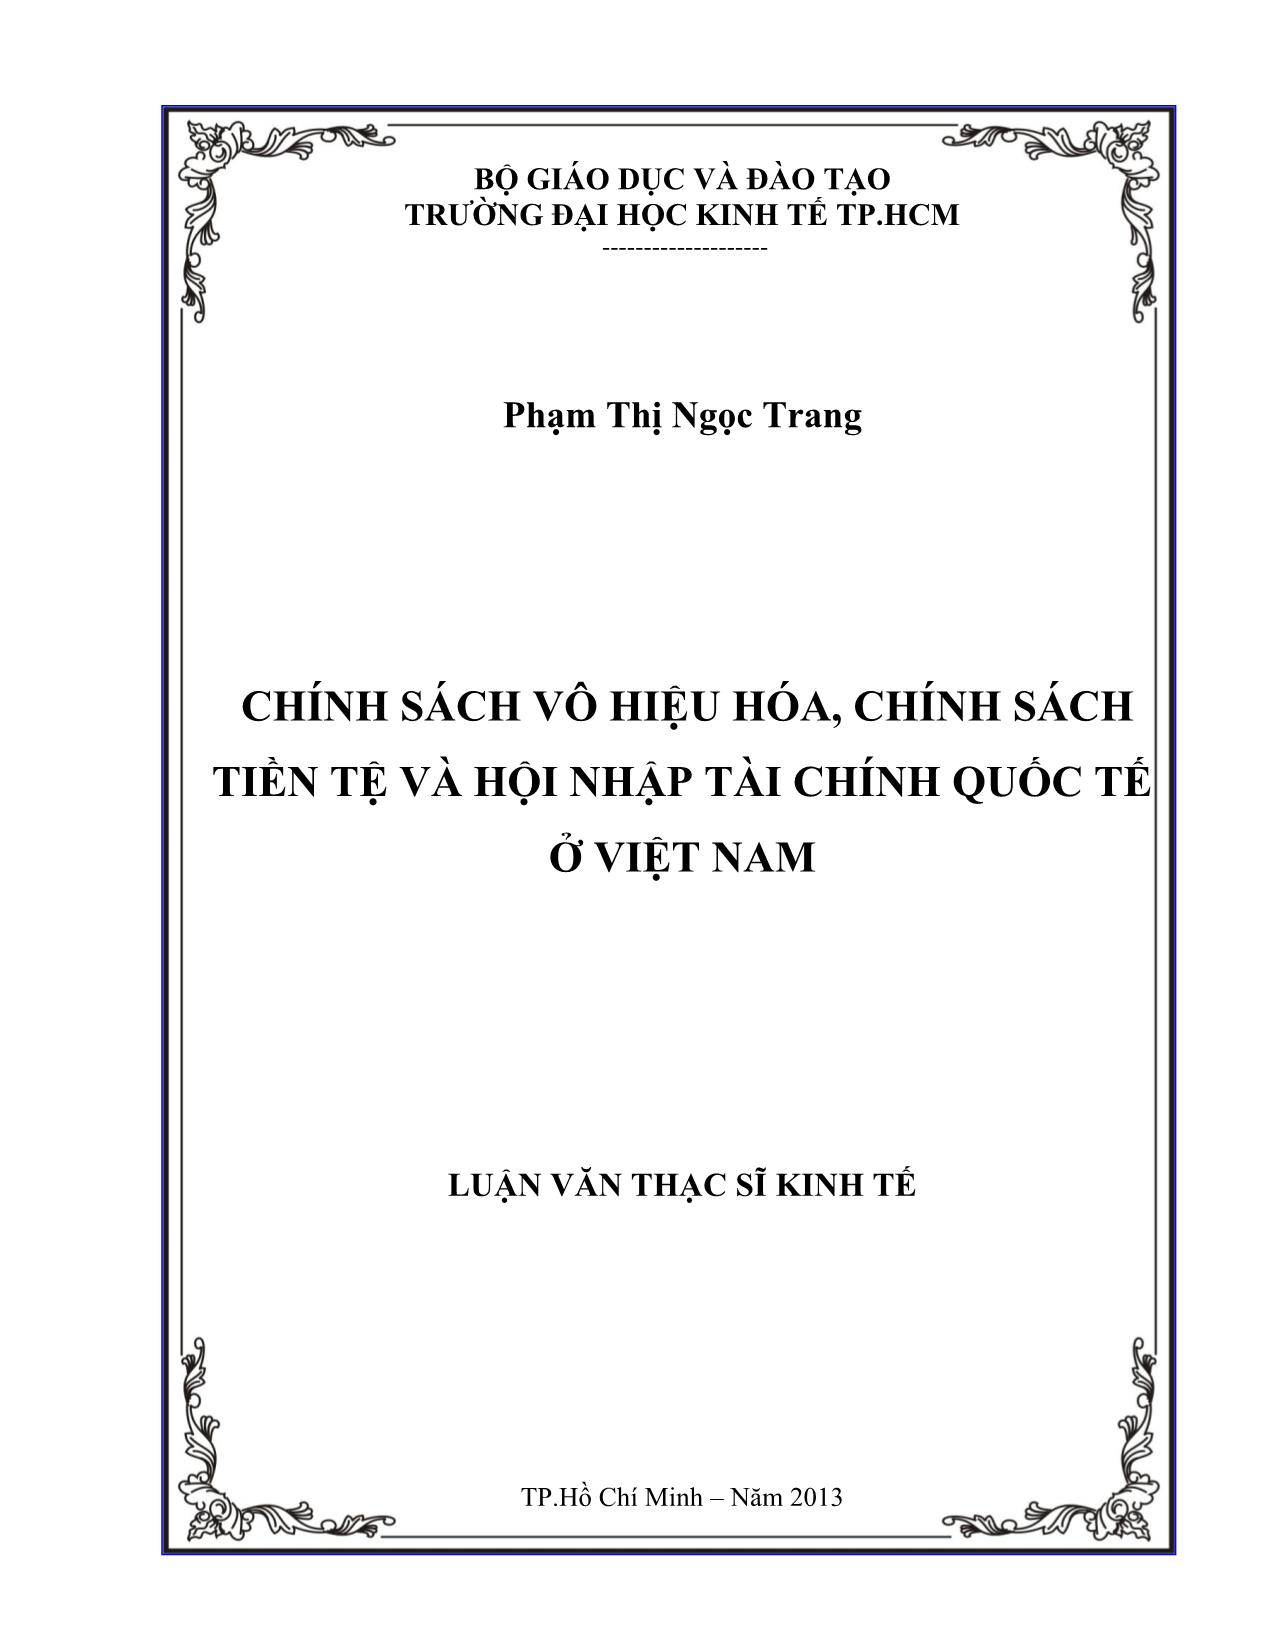 Chính sách vô hiệu hóa, chính sách tiền tệ và hội nhập tài chính quốc tế ở Việt Nam trang 1